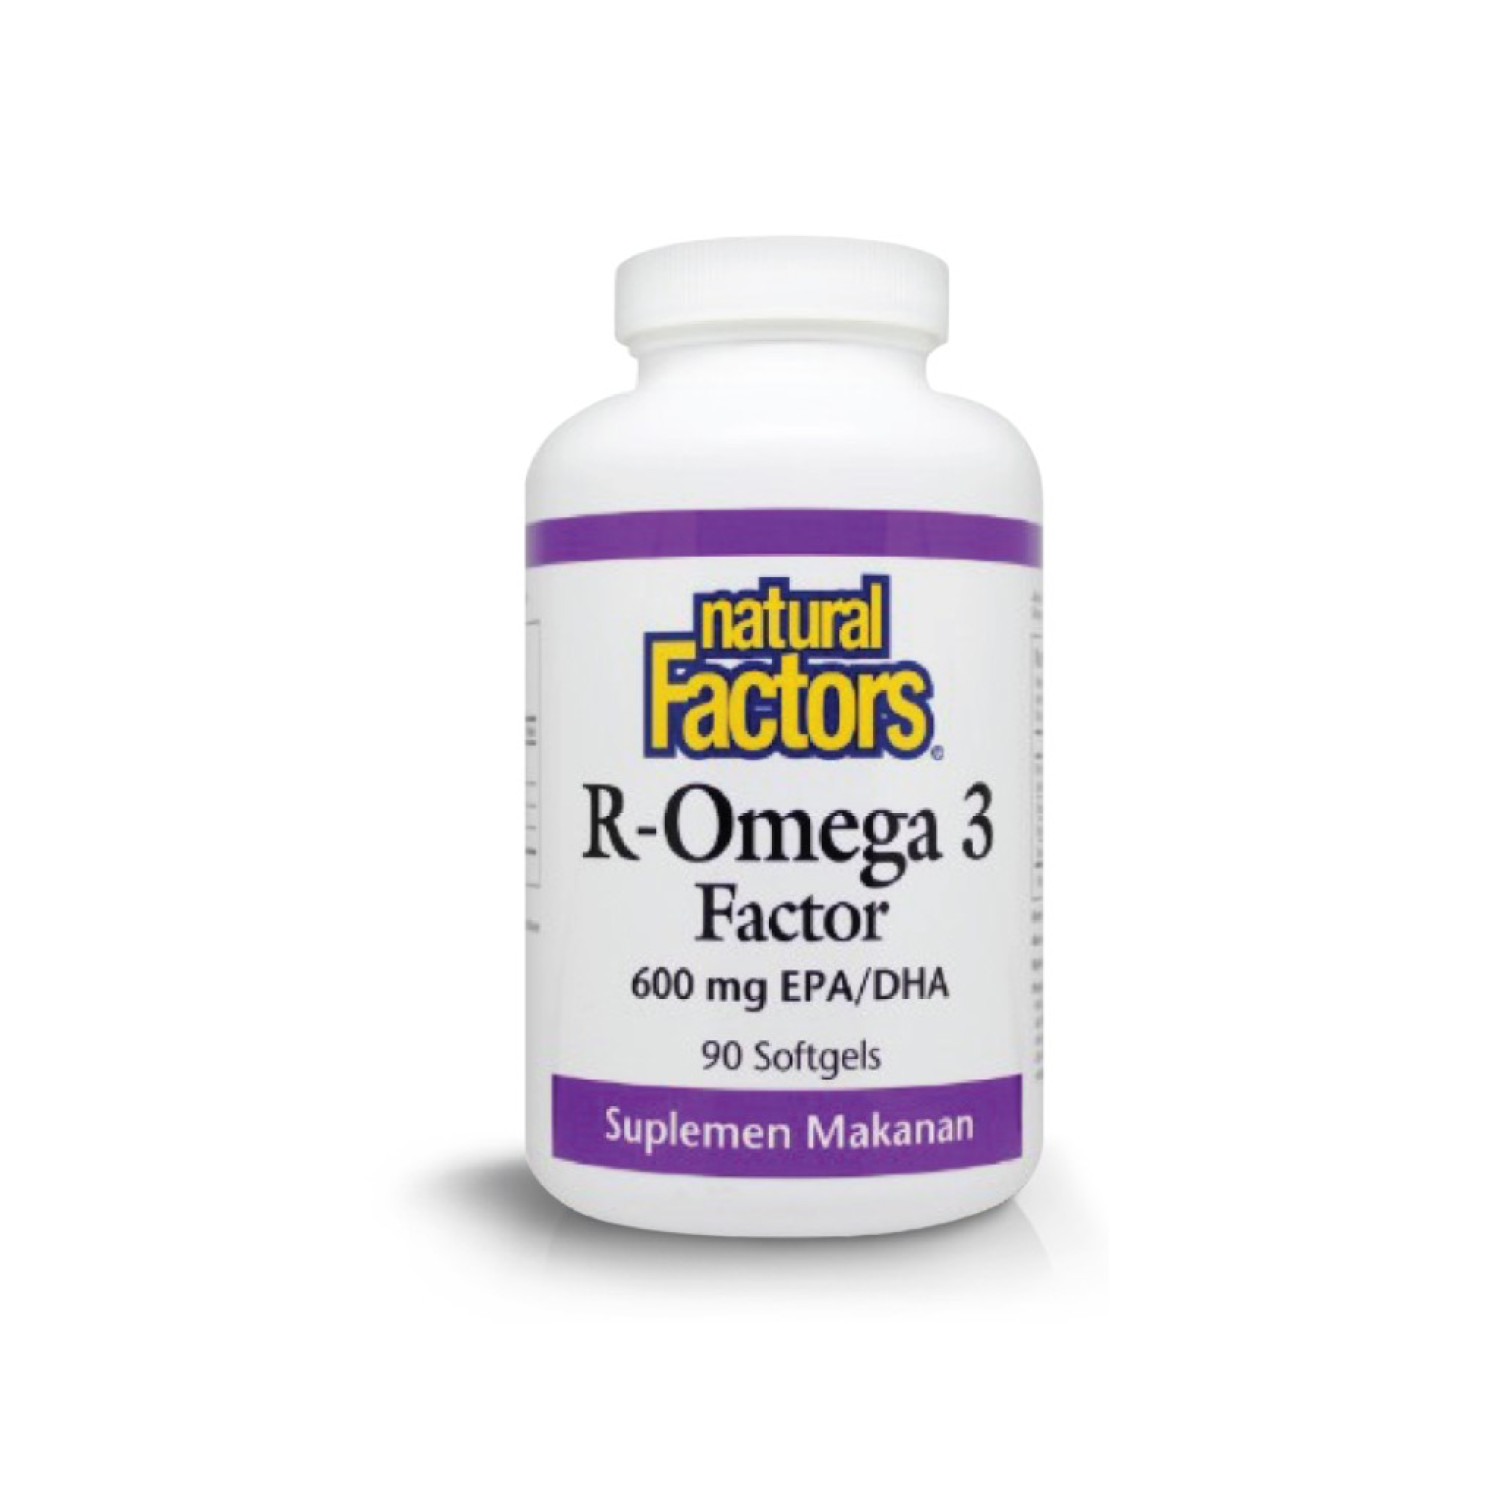 Natural Factors Natural Factors - R Omega 3 